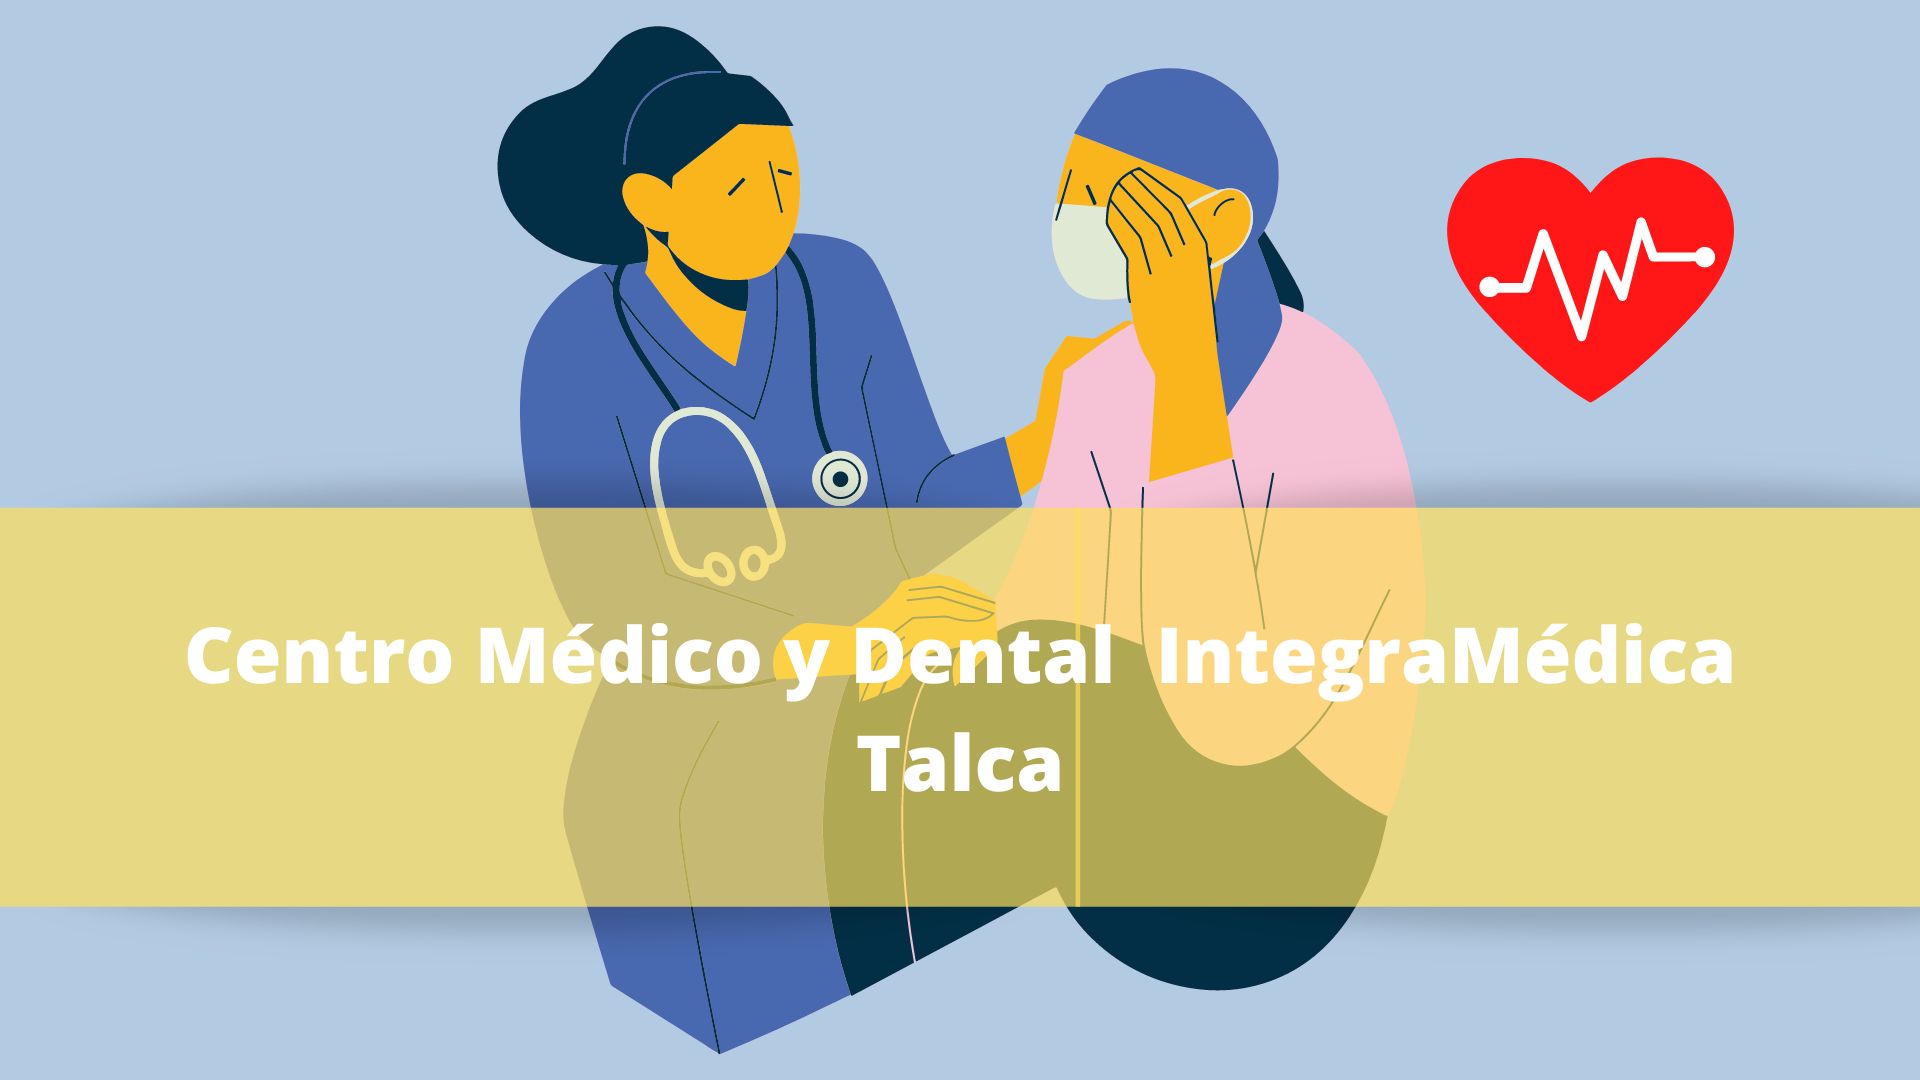 Centro Médico y Dental IntegraMédica Talca